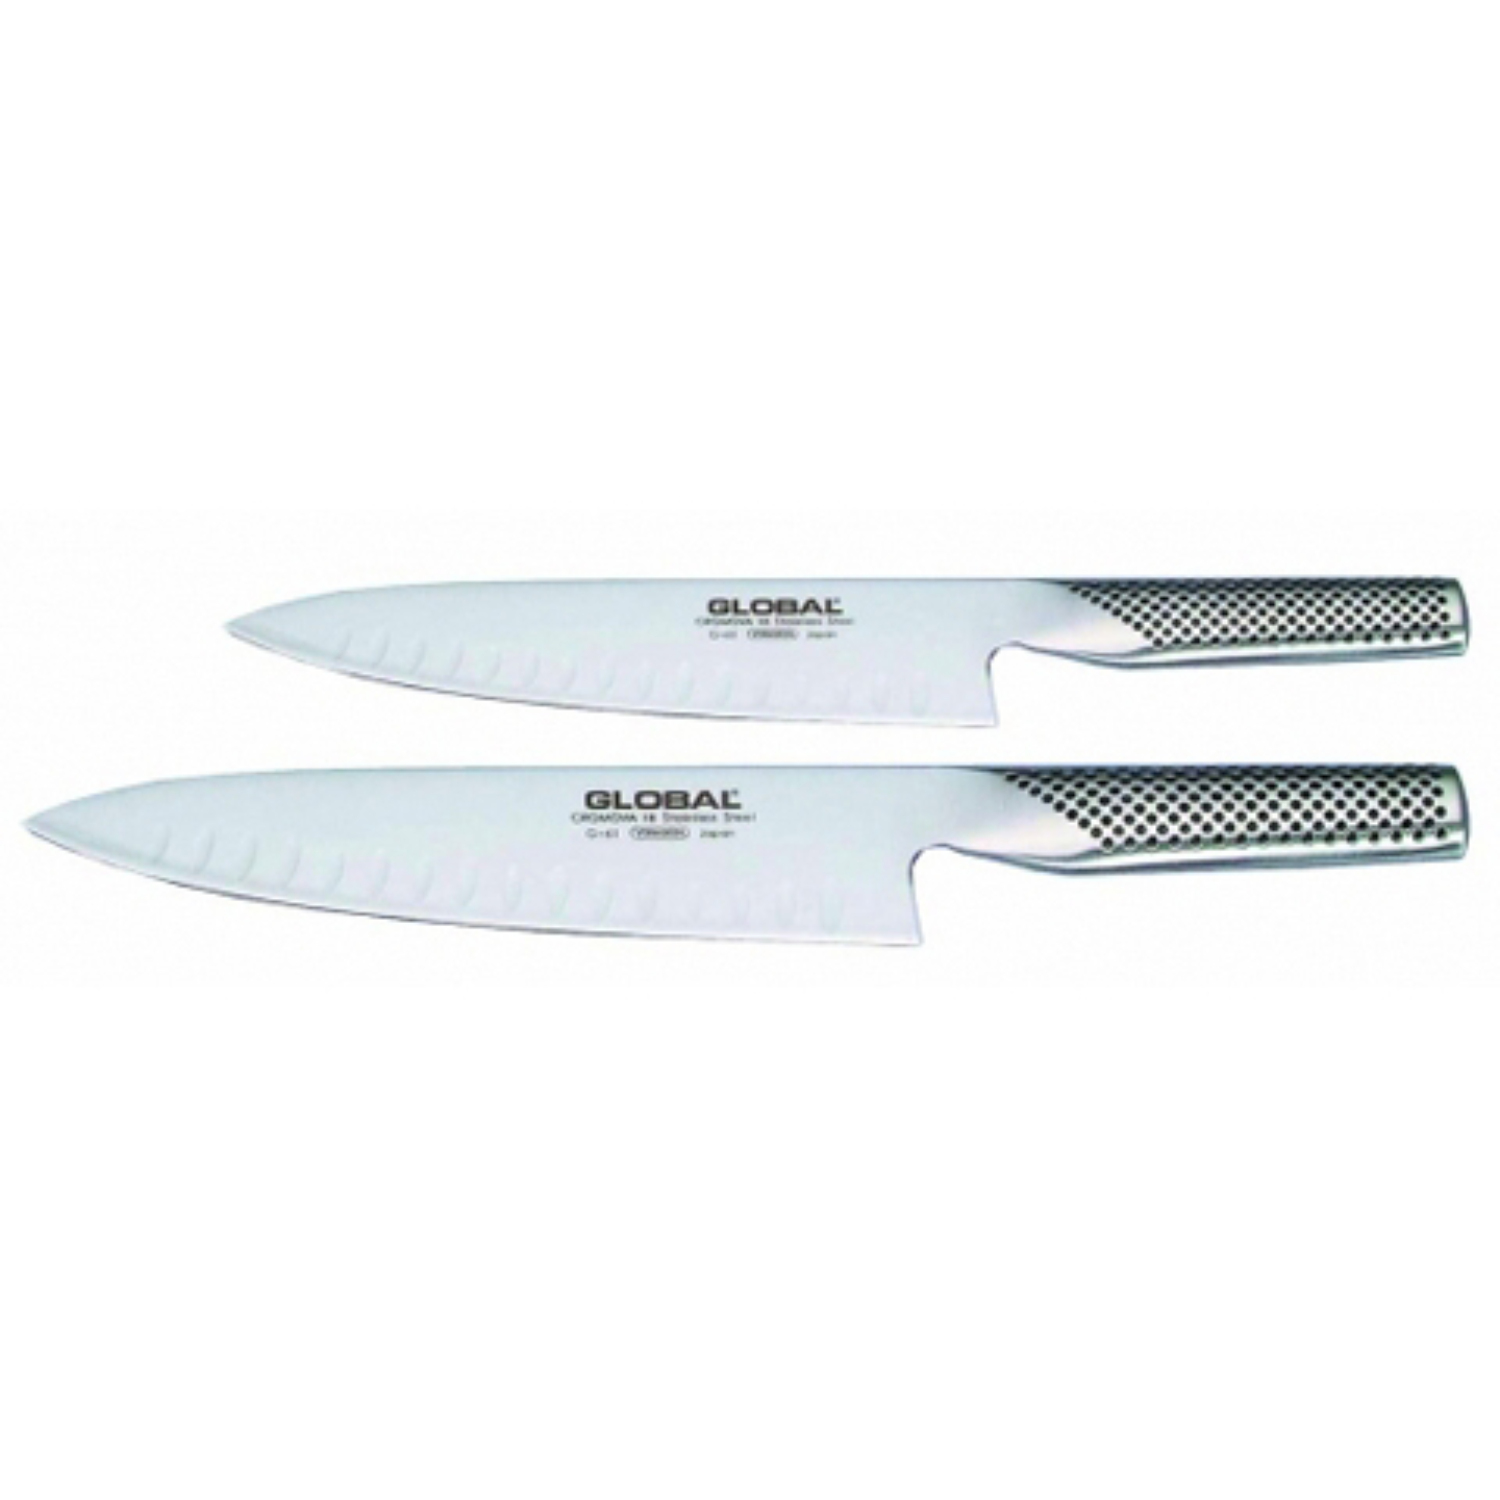 Couteau de Cuisine G61, G63 - Couteau Global Le Comptoir de la Patisserie